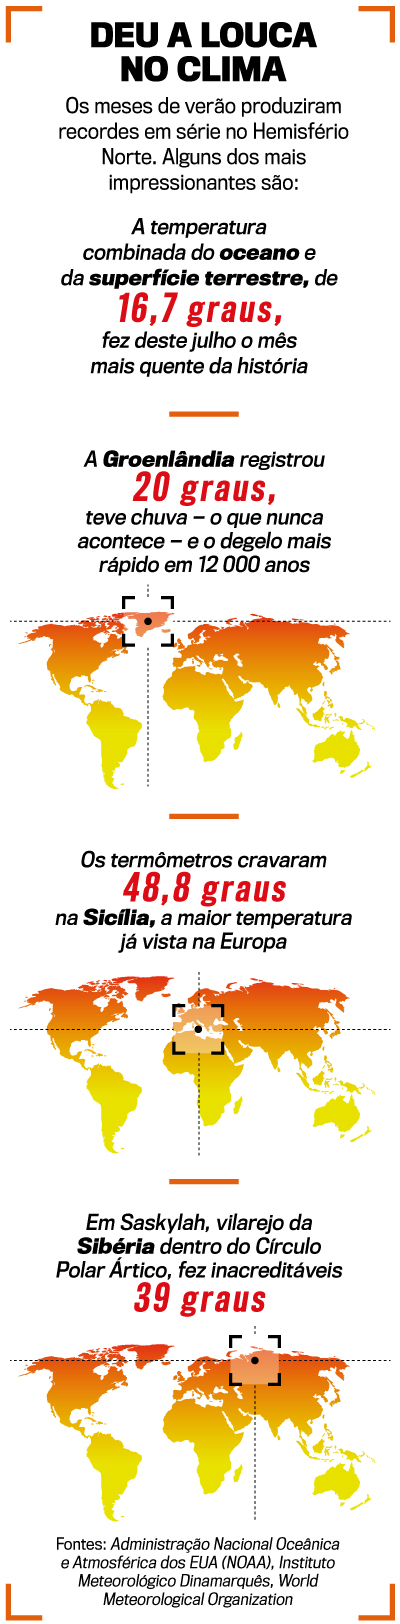 Nunca antes neste planeta: o calor recorde no verão do Hemisfério Norte